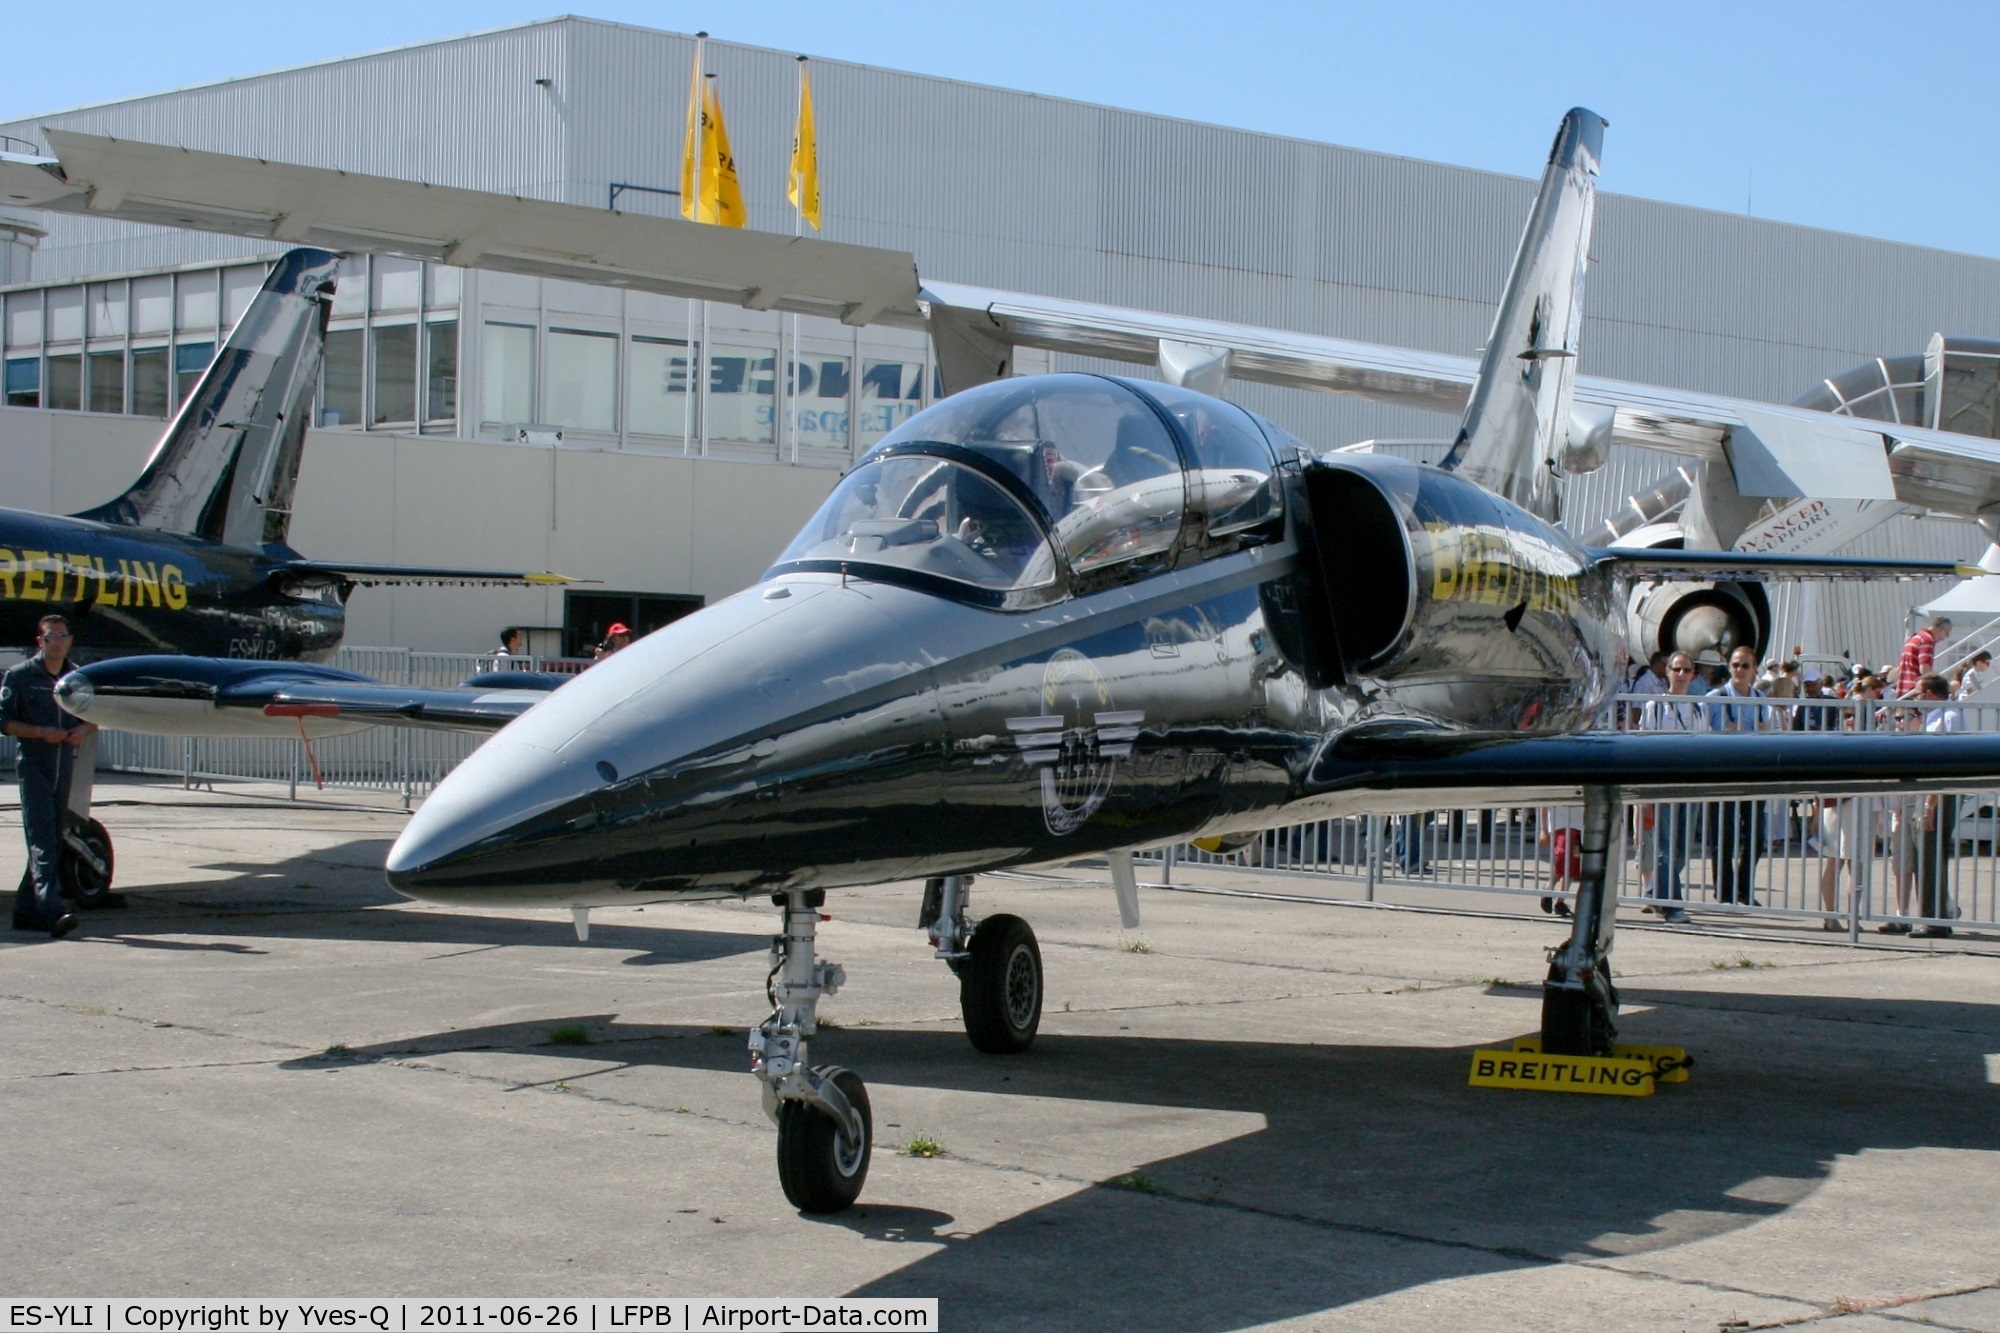 ES-YLI, Aero L-39 Albatros C/N 691876, Aero L-39C Albatros,  Breitling Aerobatic Team, Paris Le Bourget (LFPB-LBG) Air Show in june 2011